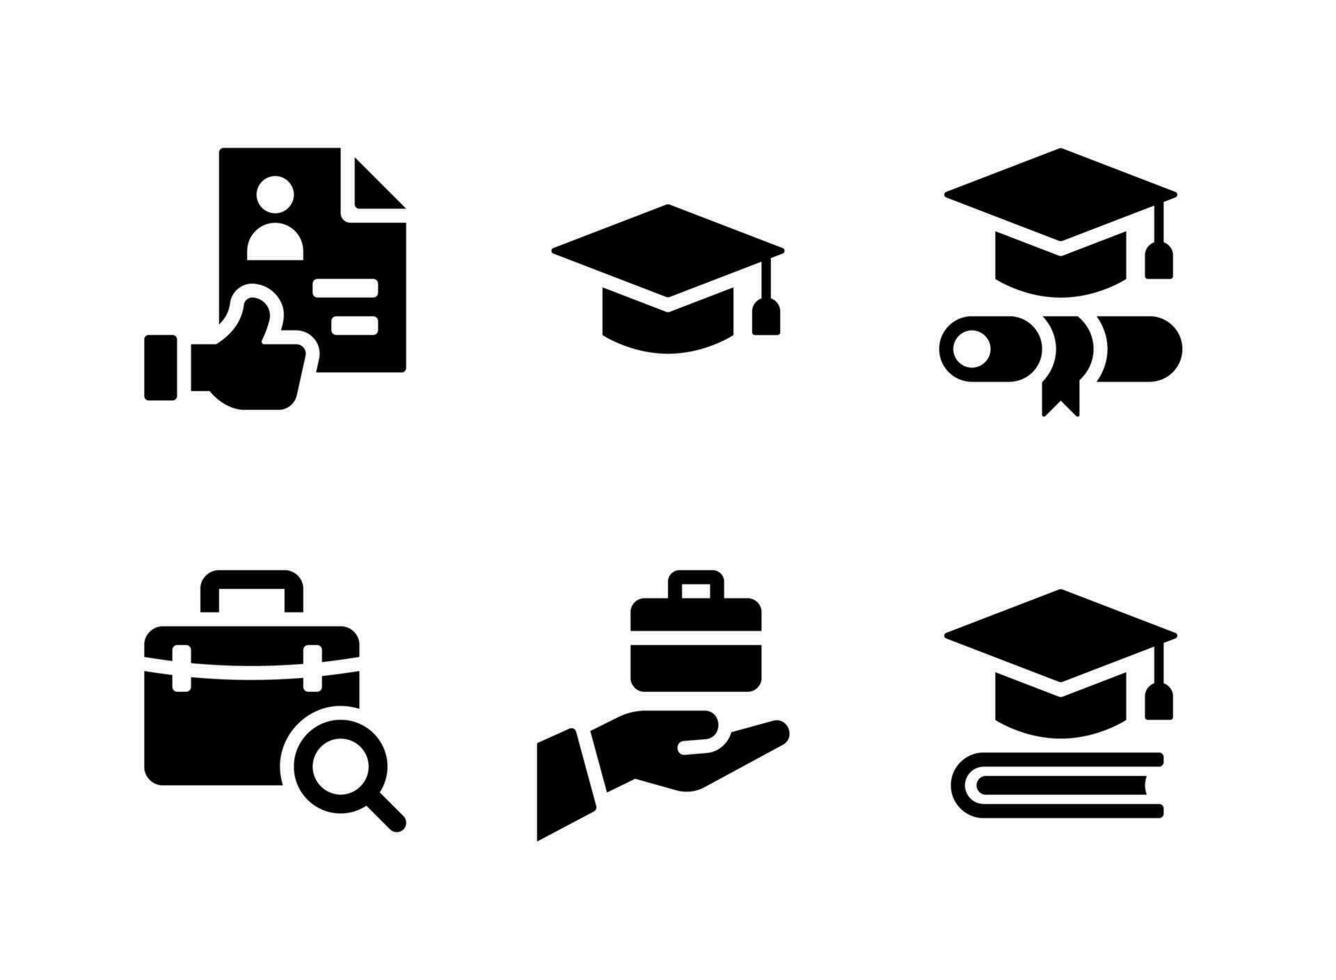 semplice set di icone solide vettoriali relative alla graduazione. contiene icone come ottimo curriculum, sparviere, diploma e altro ancora.